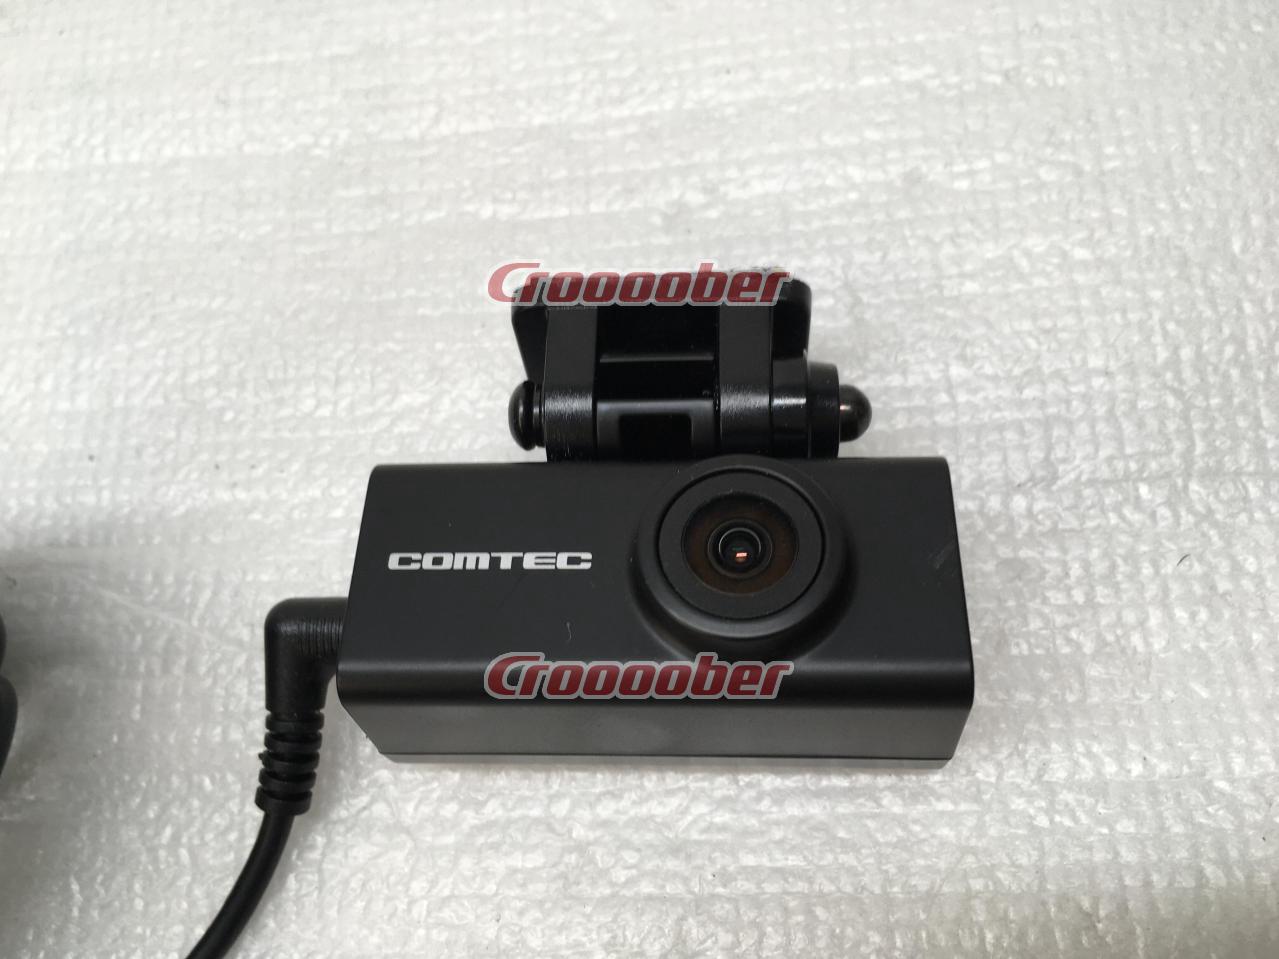 COMTEC ZDR-015 | Drive Recorder | Croooober